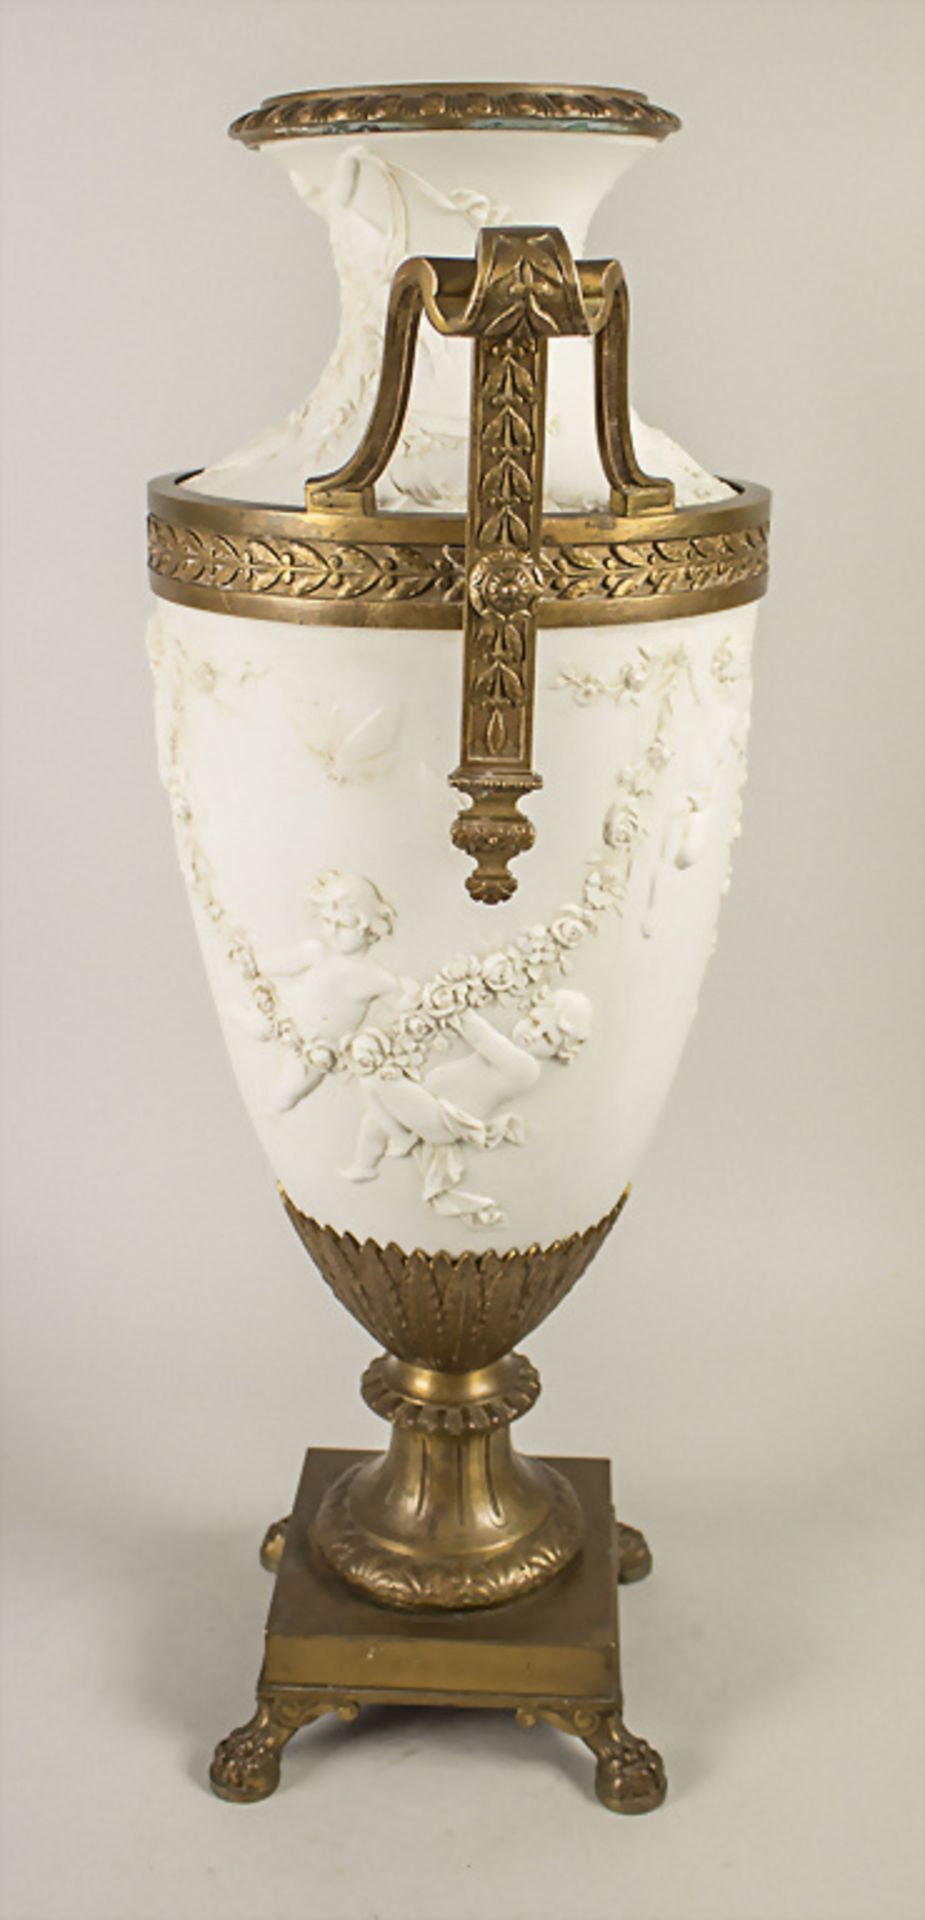 Große Empire Henkel-Prunkvase / A large Empire splendid vase with handles, wohl Sèvres, 19. Jh. - Image 6 of 8